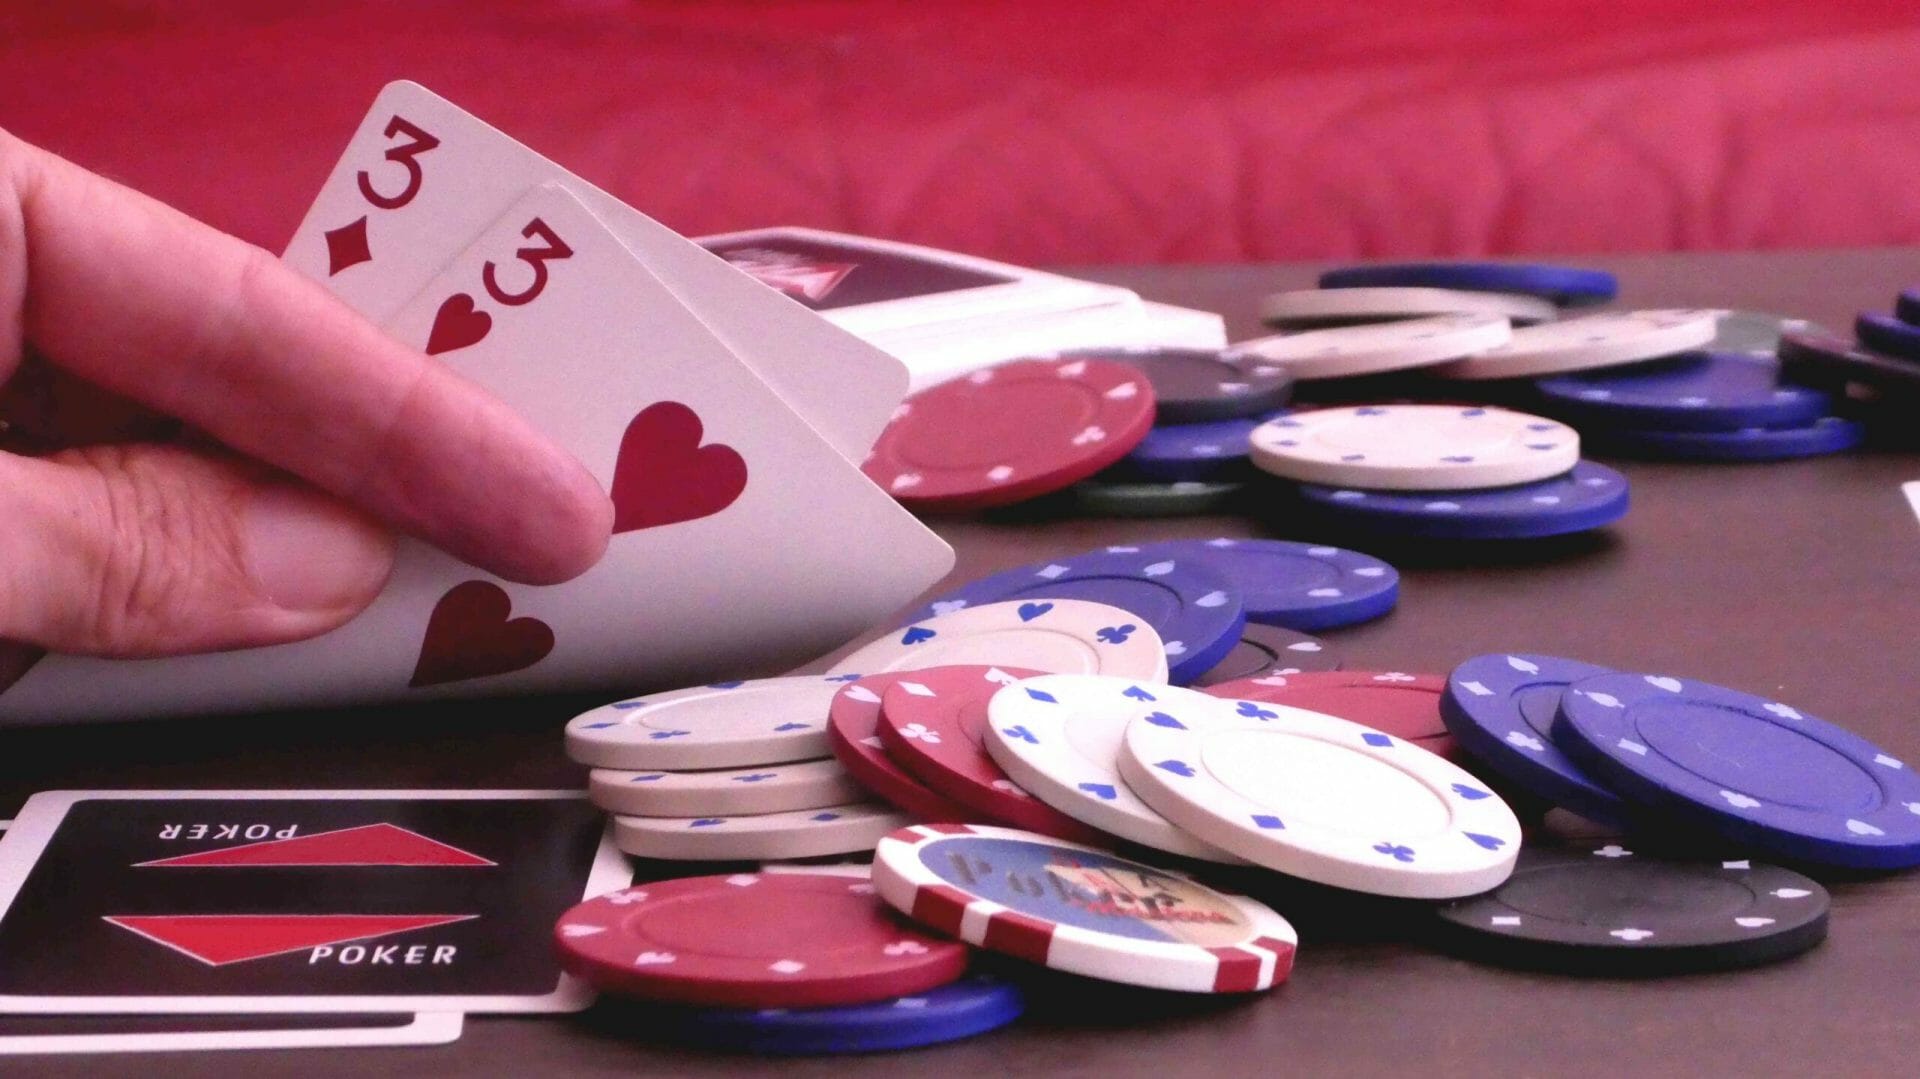 Como funciona um jogo de pôquer?